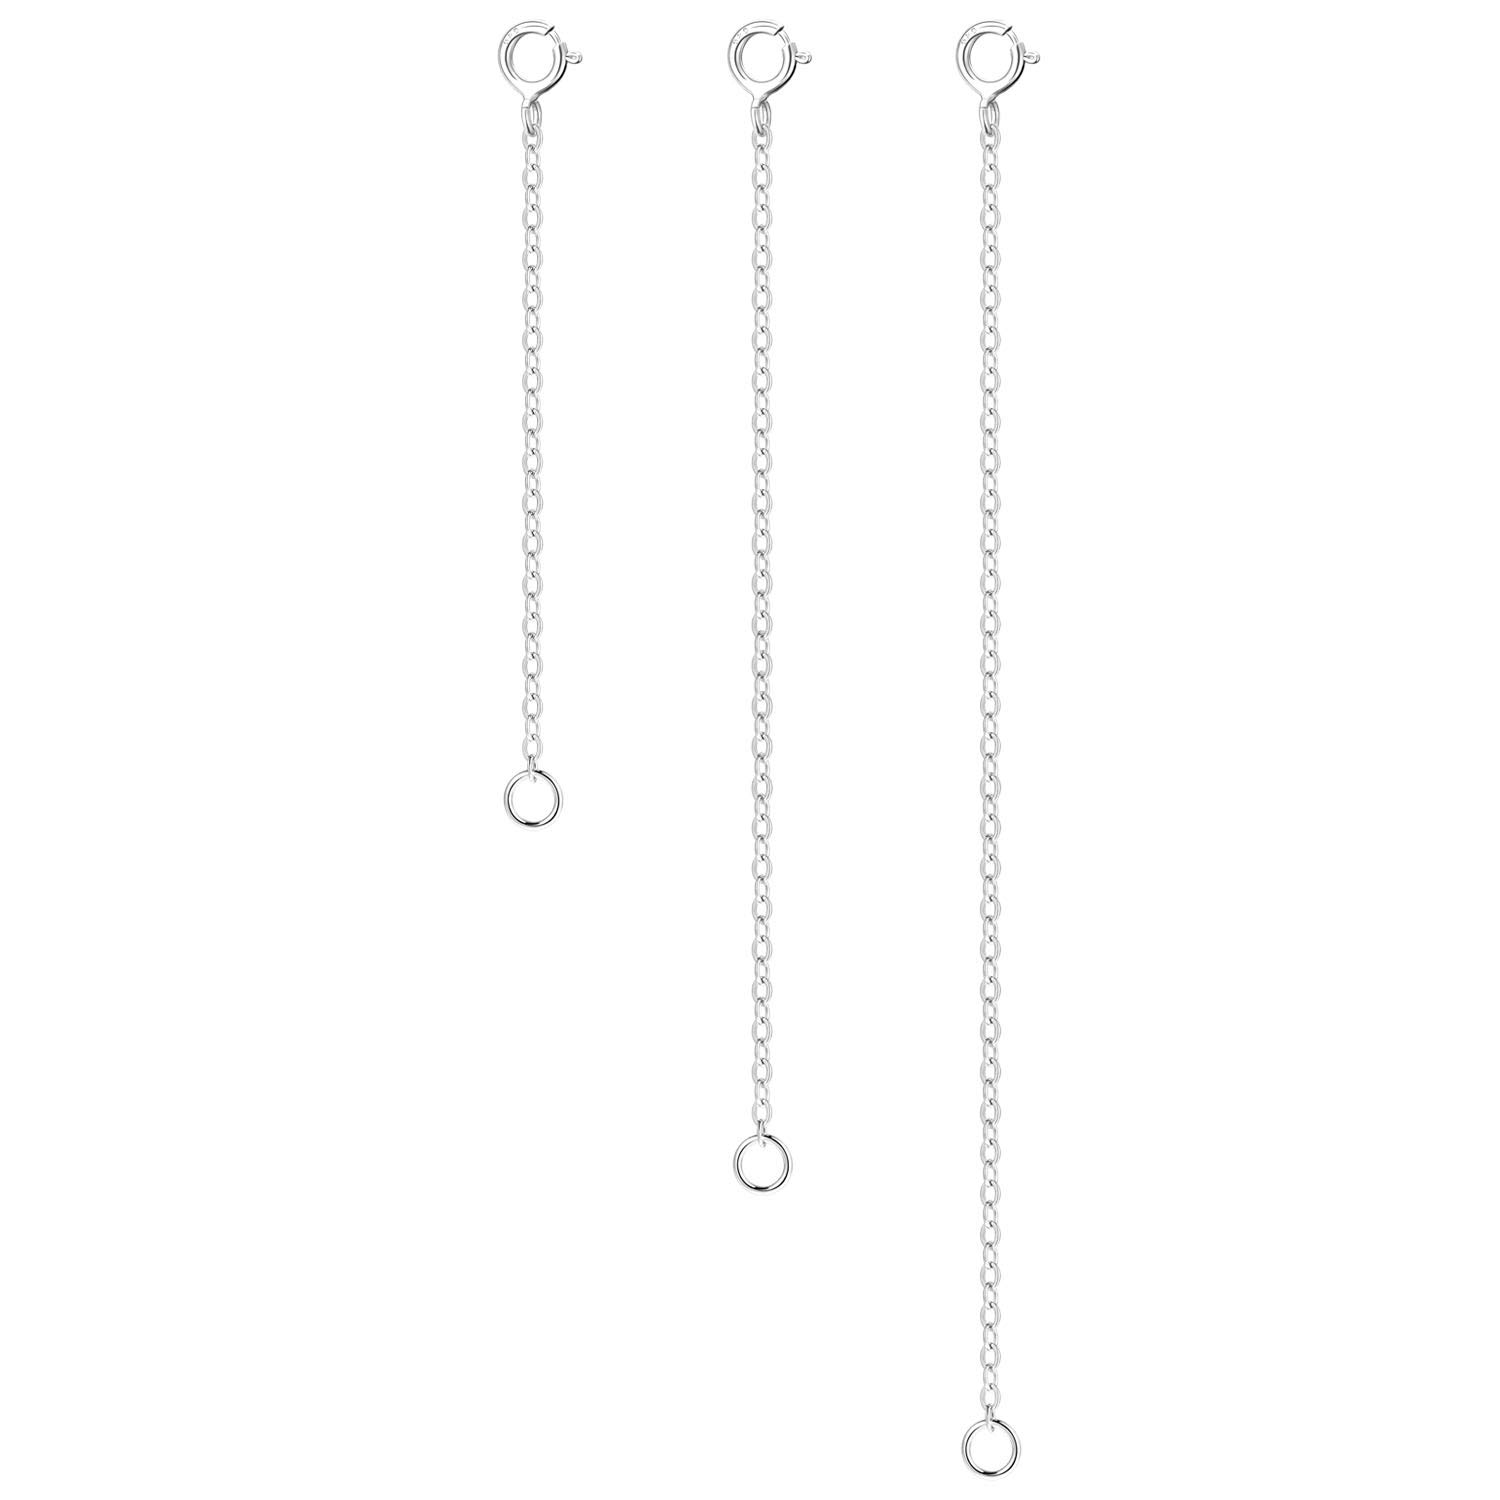 Exclusif LANCHARMED chaîne d´extension en Argent Sterling 925 pour Femme, rallonge de chaîne pour allonger Vos Colliers et Bracelets pour la Fabrication de Bijoux ZktaqsbUO vente chaude